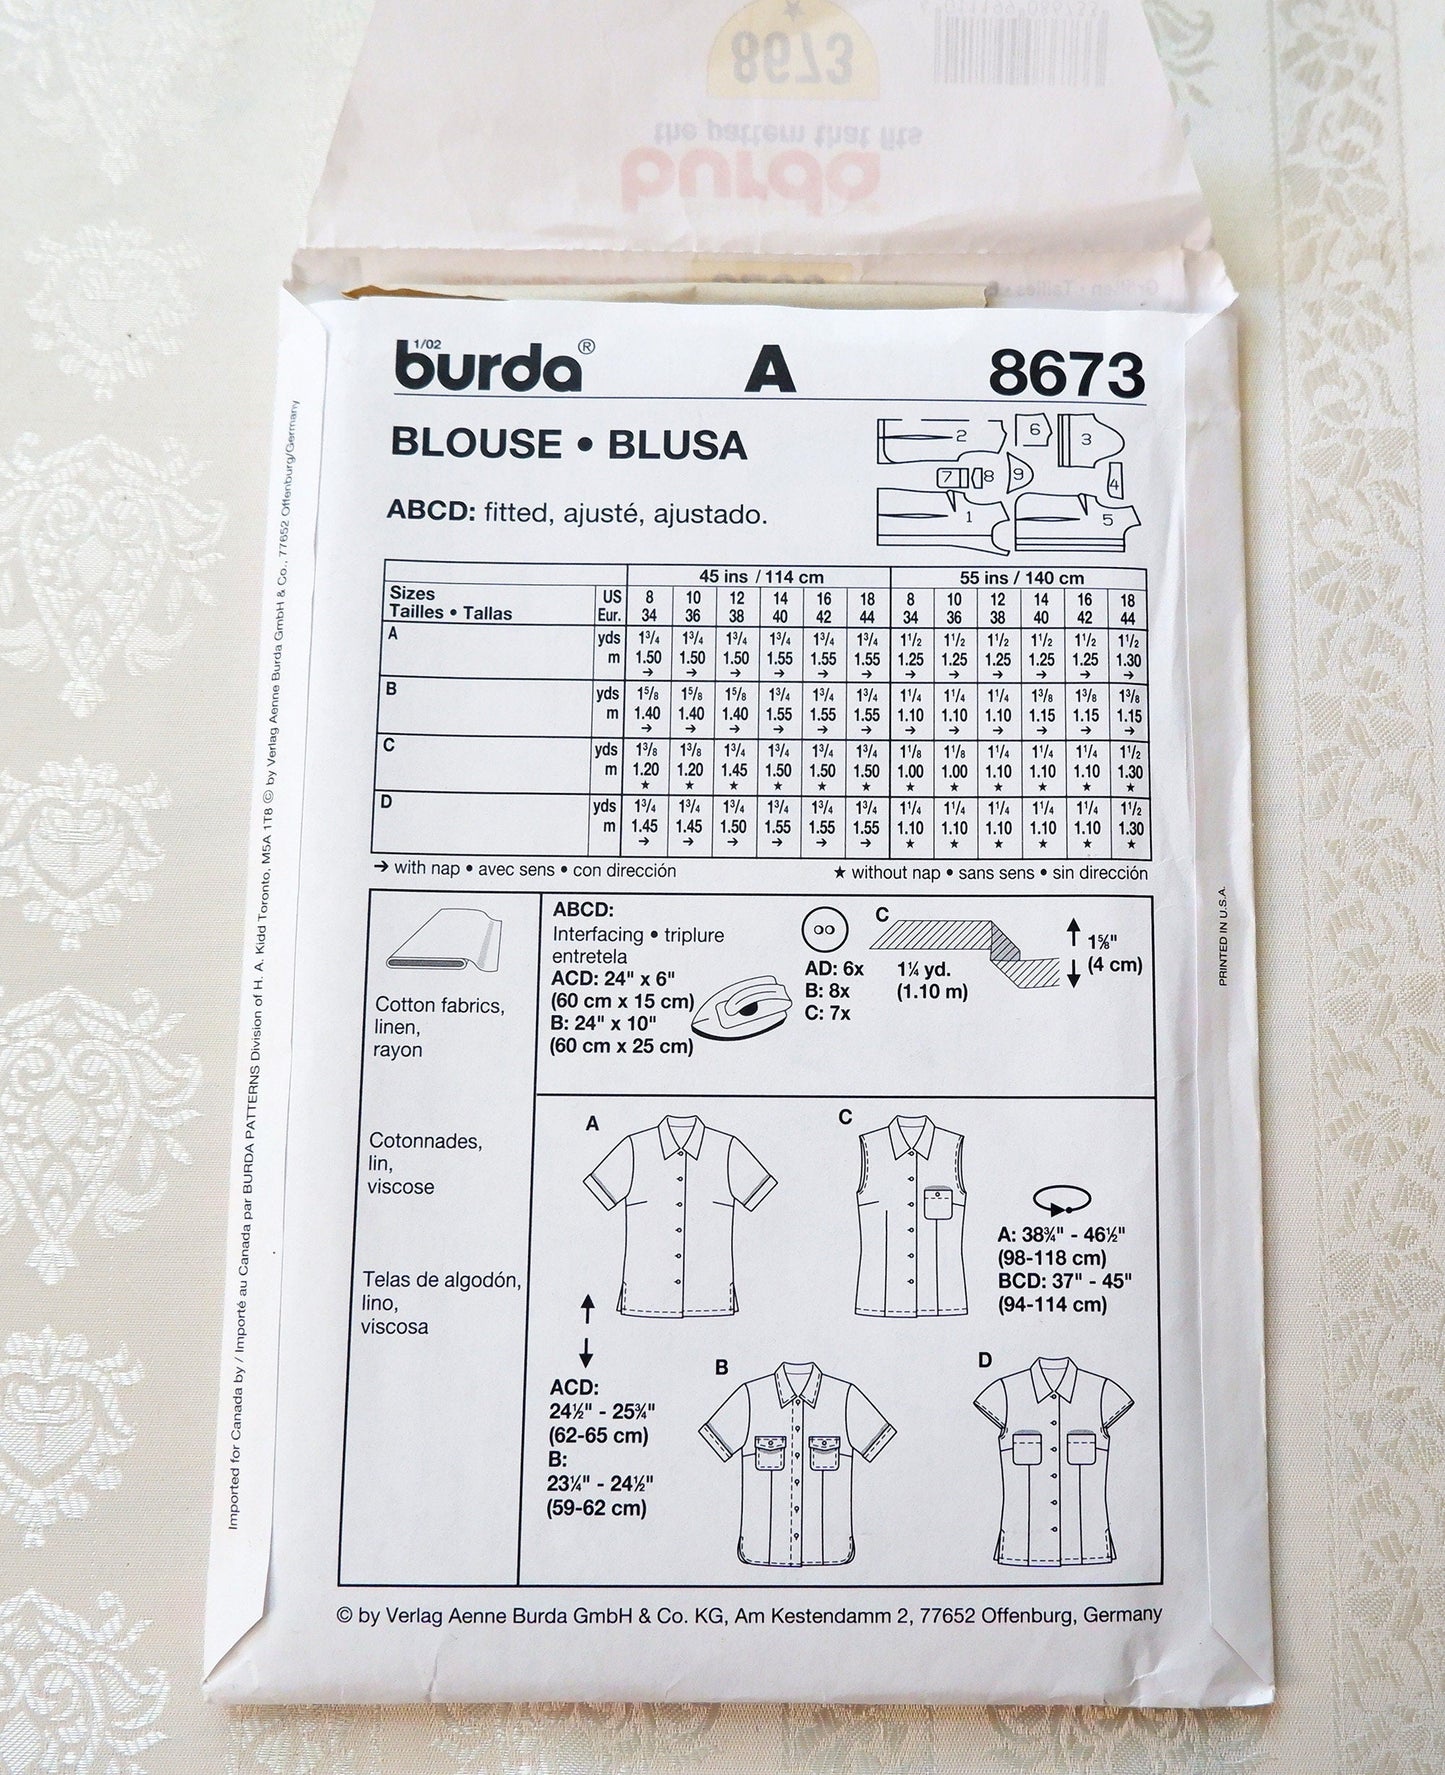 Burda 8673, womens blouse patterns, size 8 - 18